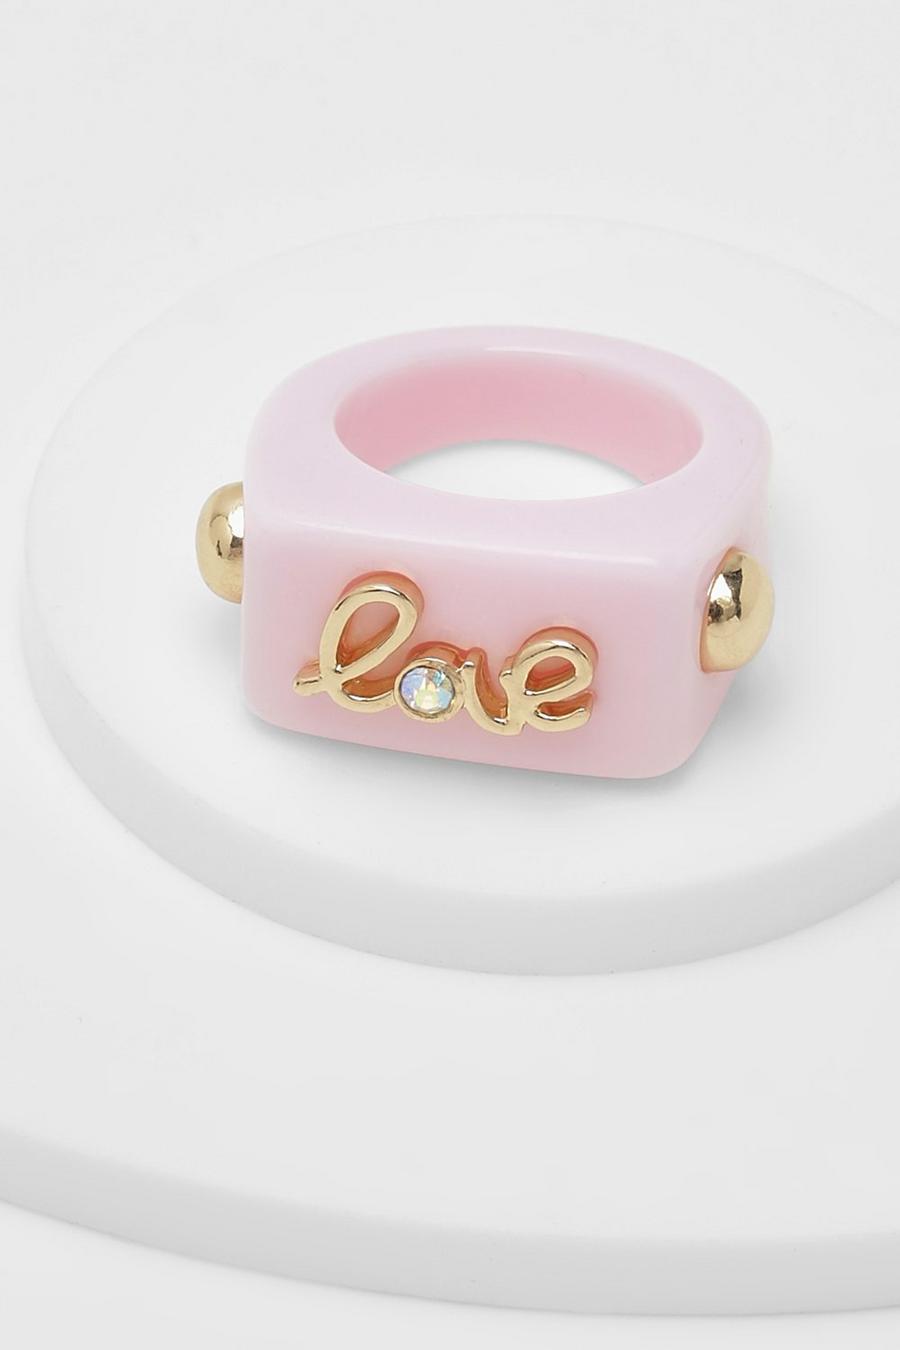 Klobiger Love Resin-Ring, Pastel pink rose